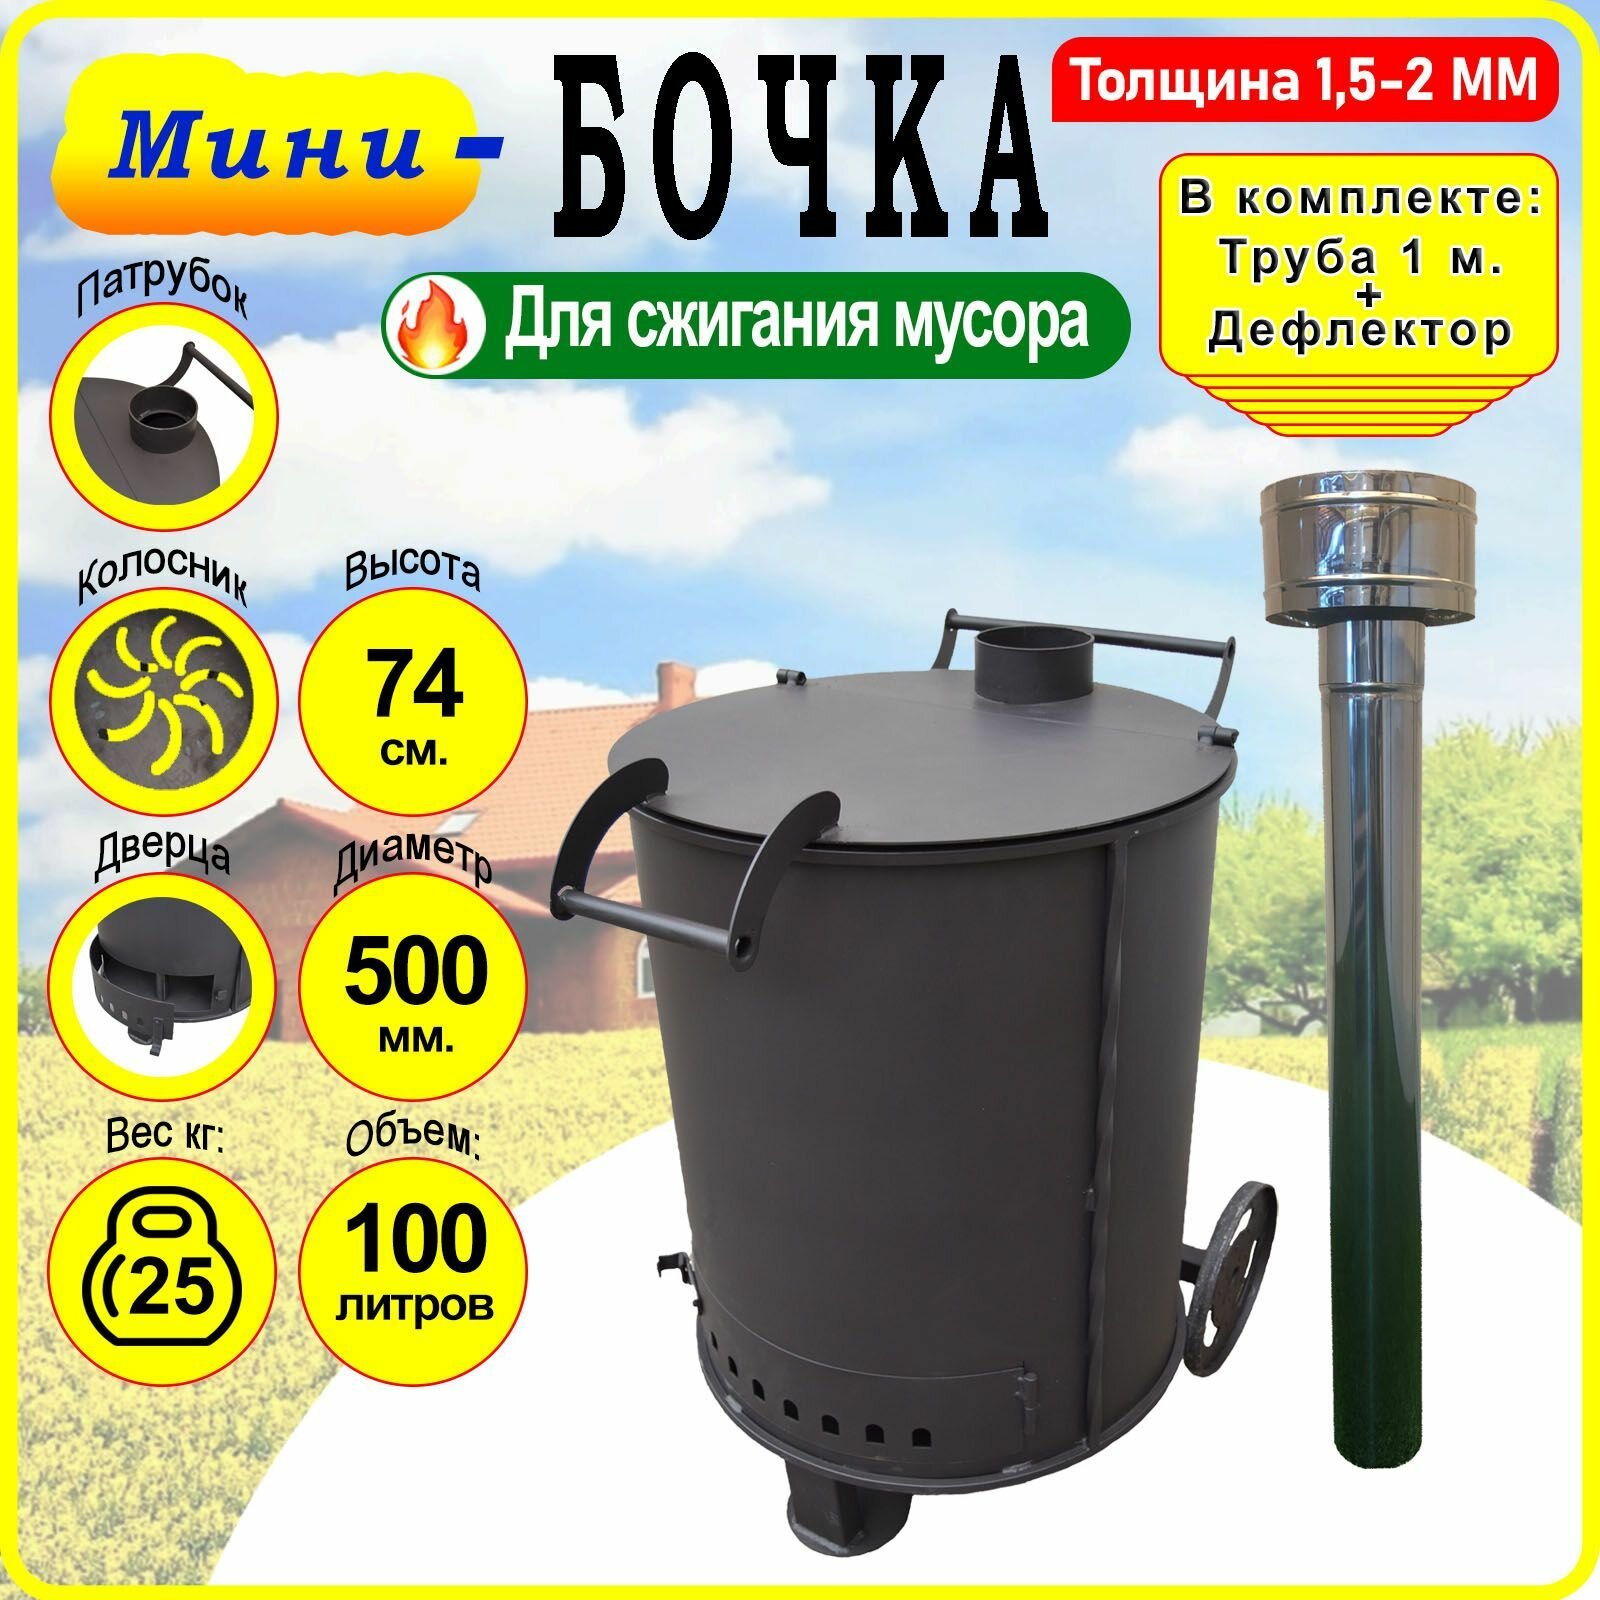 Бочка для сжигания мусора Круглая - Мини с колосником трубой и дефлектором.